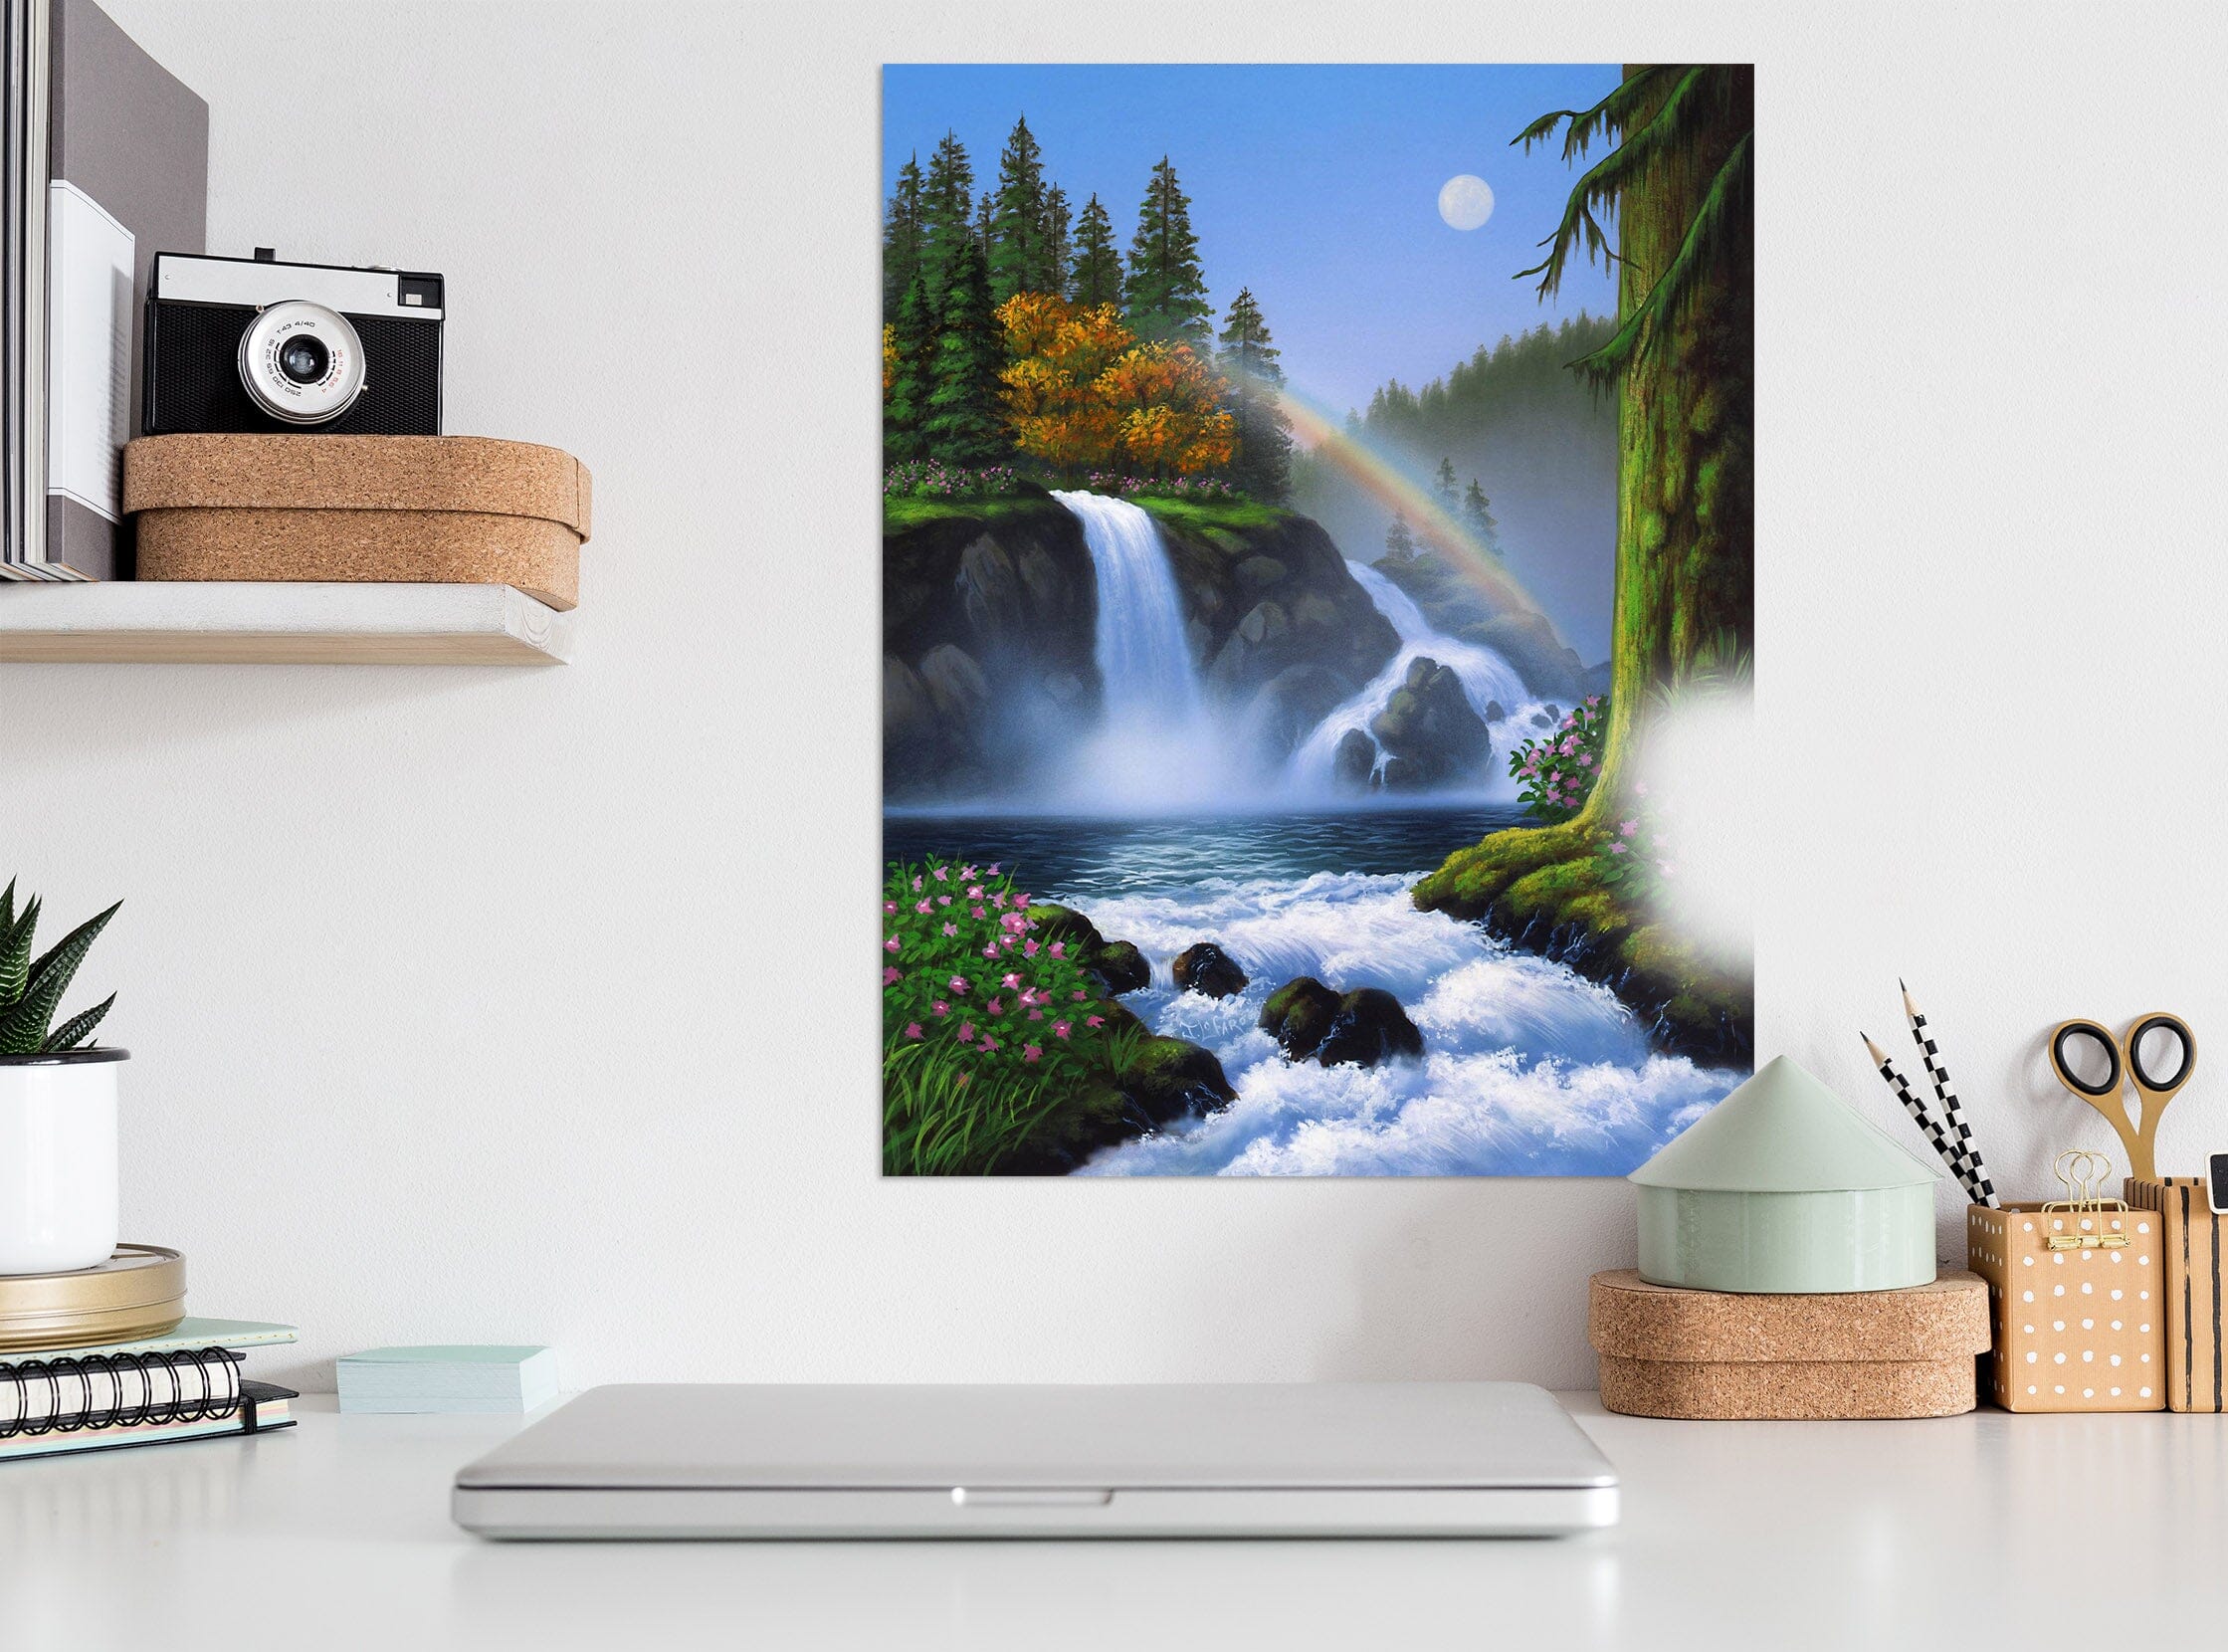 3D Waterfall 038 Jerry LoFaro Wall Sticker Wallpaper AJ Wallpaper 2 